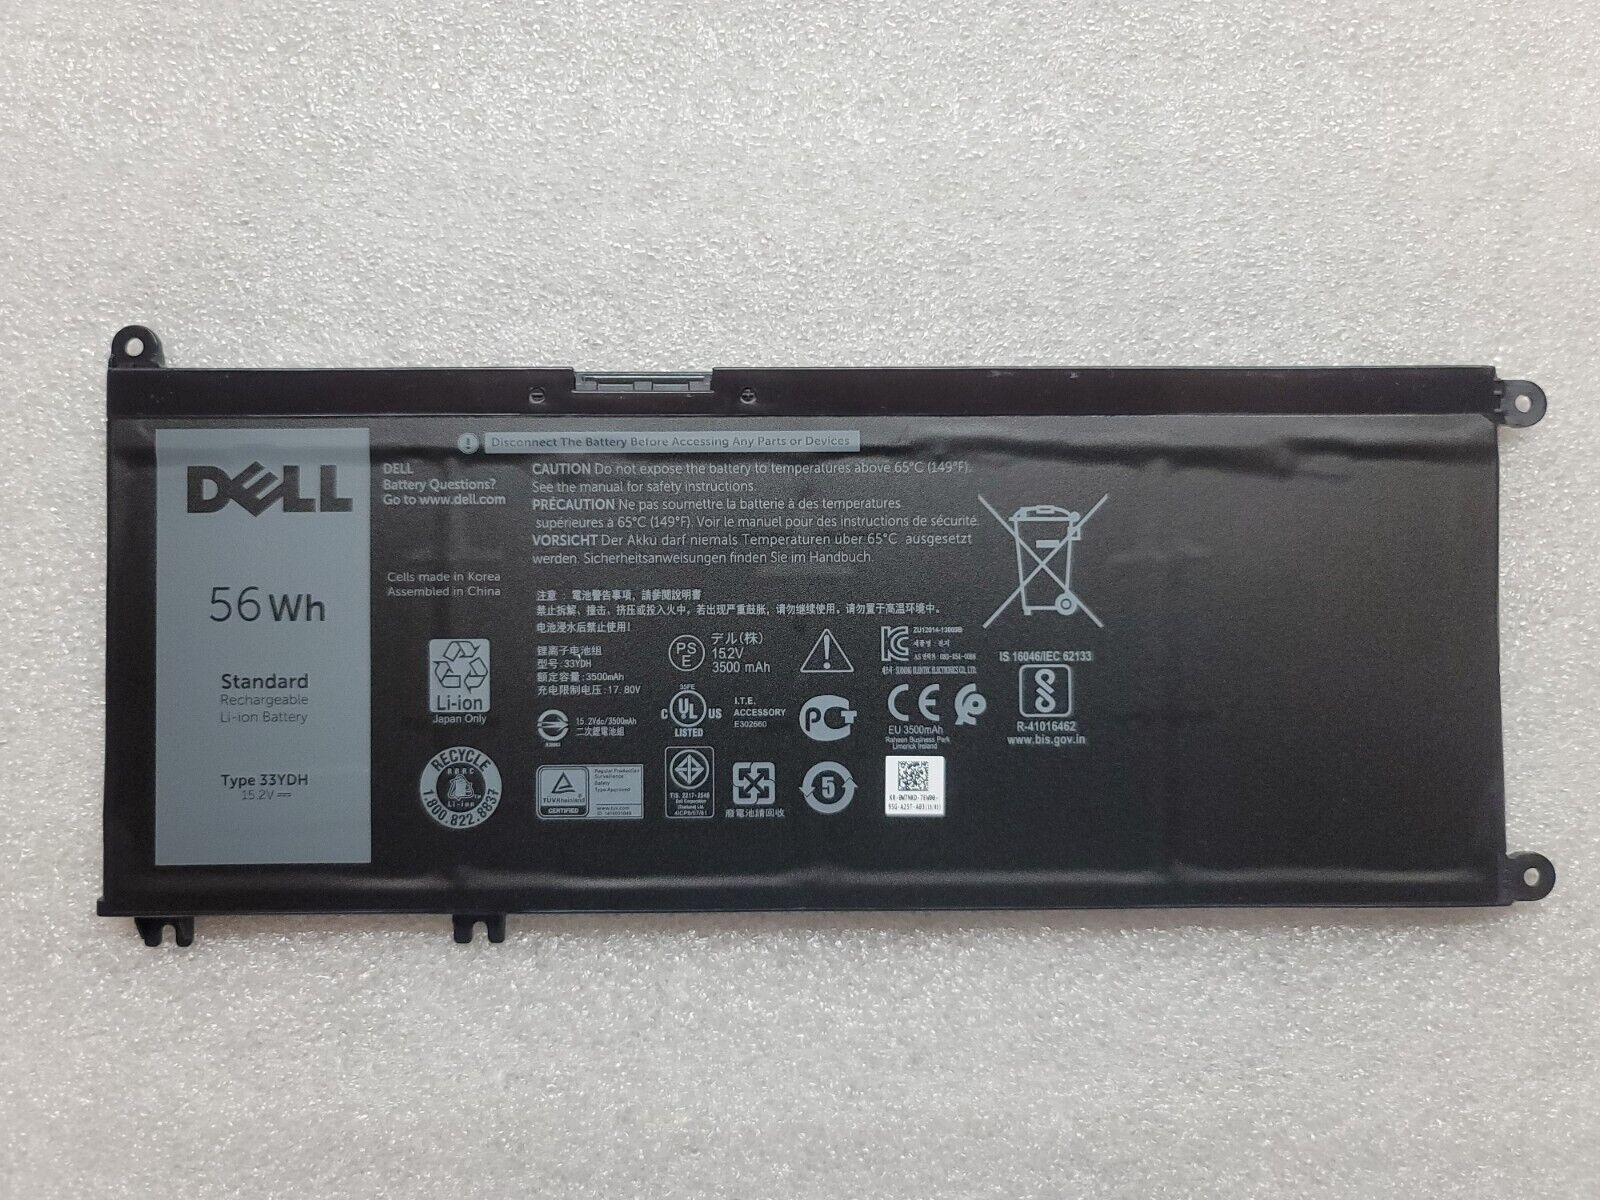 NEW OEM Dell G3 15 3579 15.6